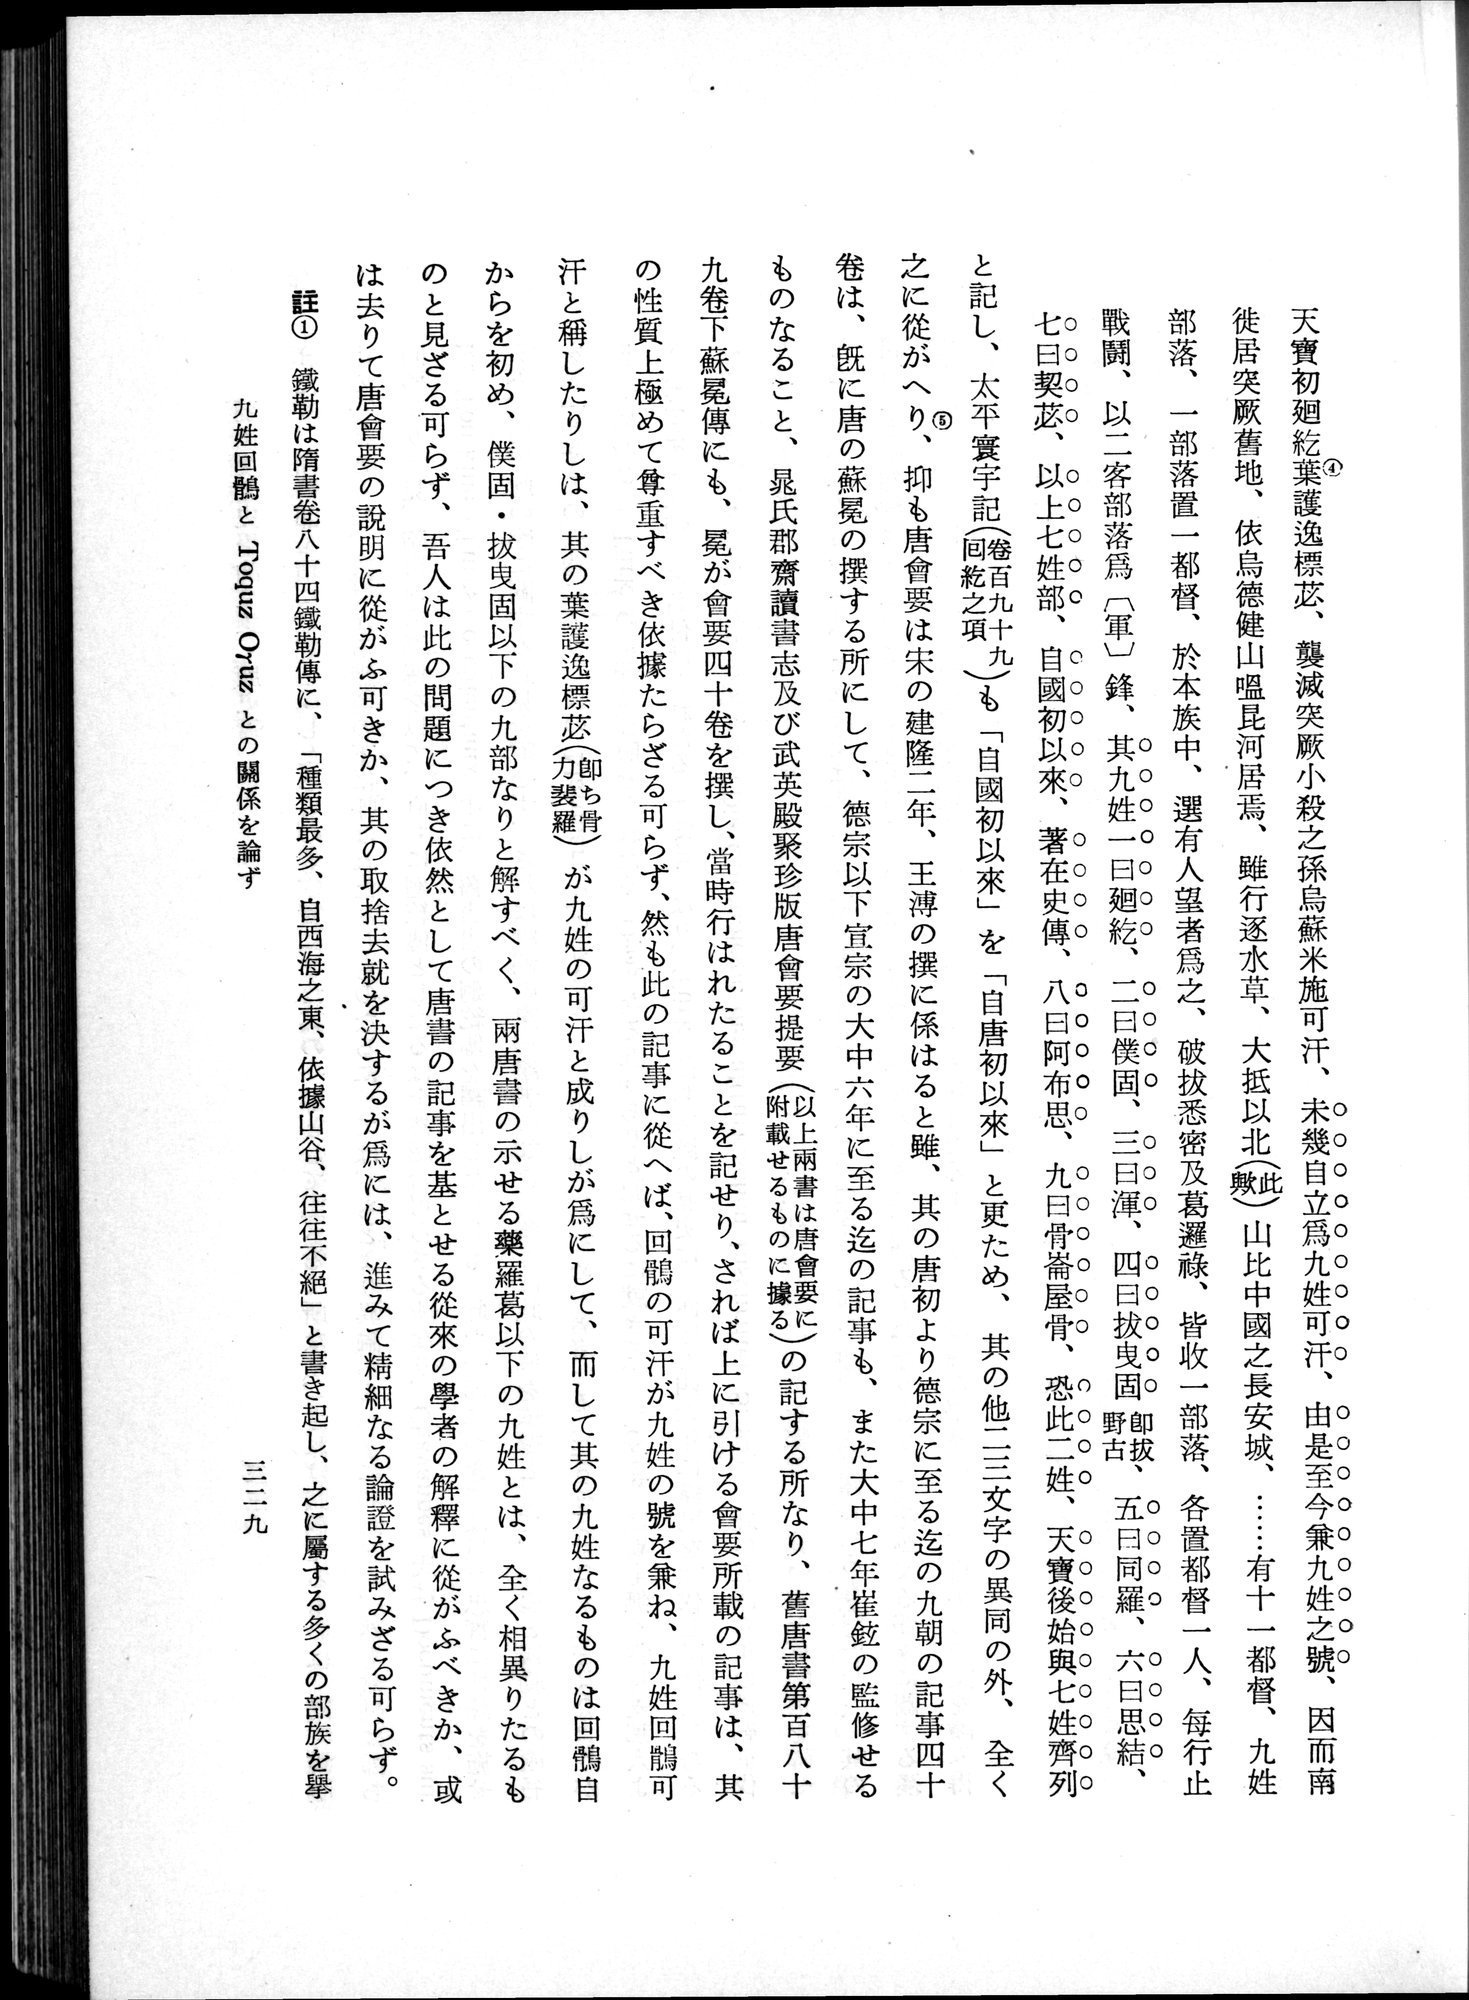 羽田博士史学論文集 : vol.1 / Page 367 (Grayscale High Resolution Image)